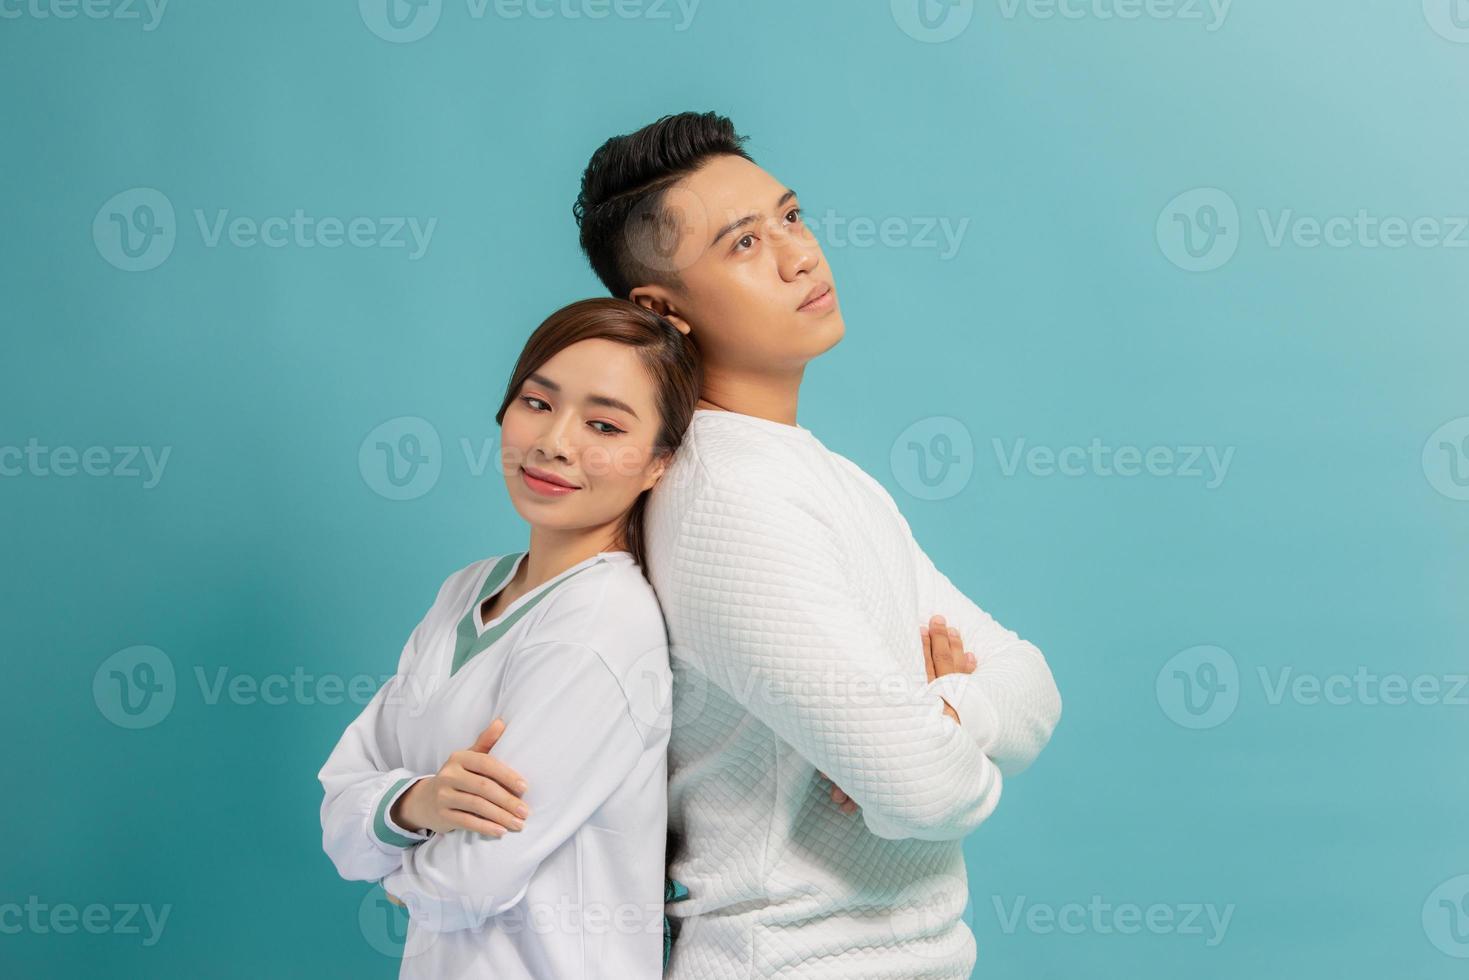 studio Foto av härlig glad par förvaring händer korsade på deras kistor och skrattande lyckligt stående över blå bakgrund